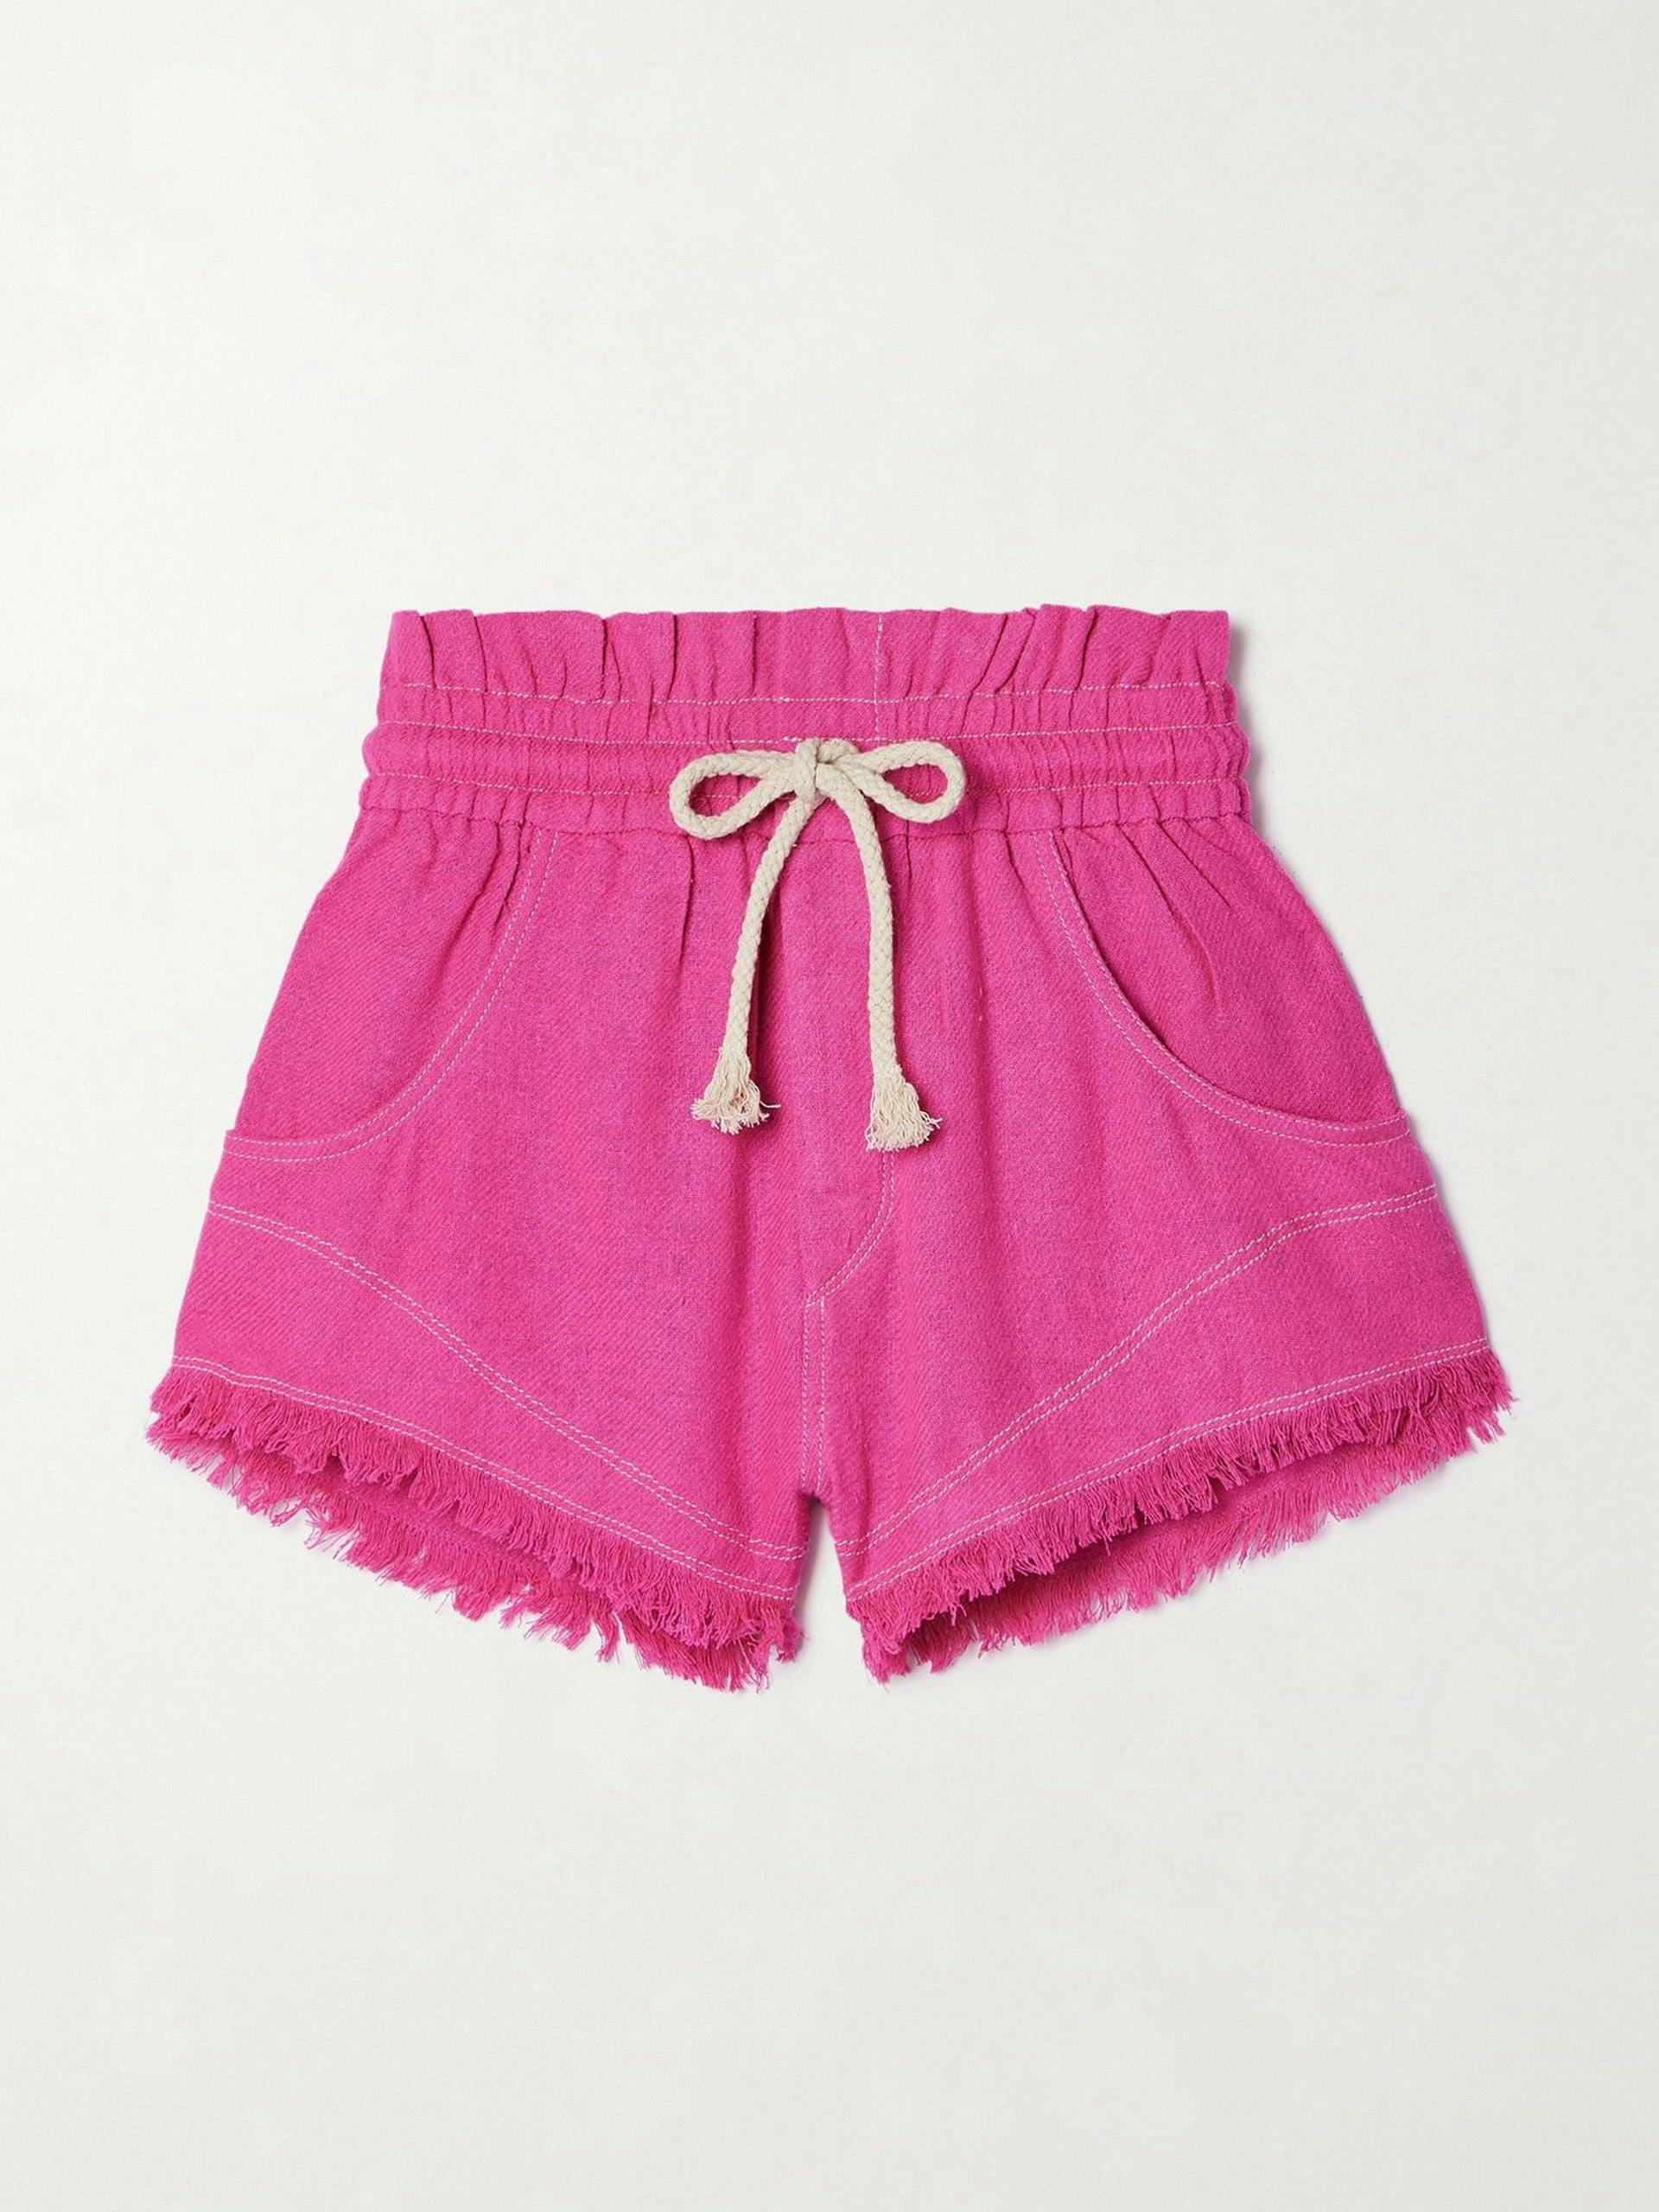 Bright pink frayed shorts